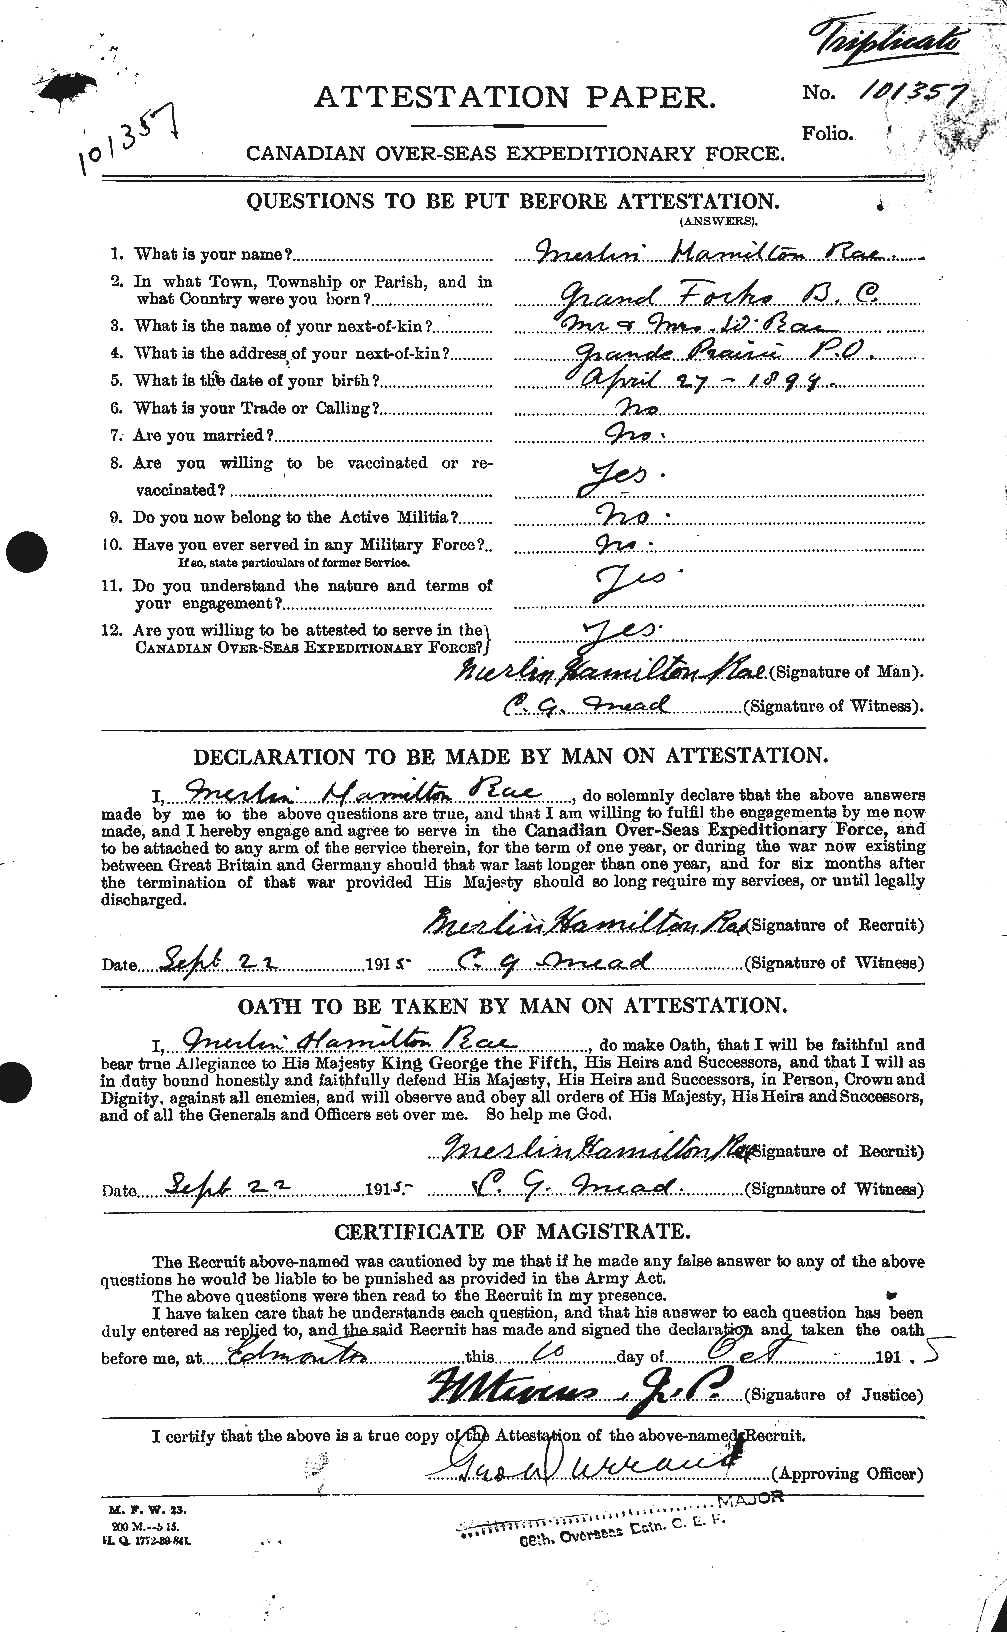 Dossiers du Personnel de la Première Guerre mondiale - CEC 591266a